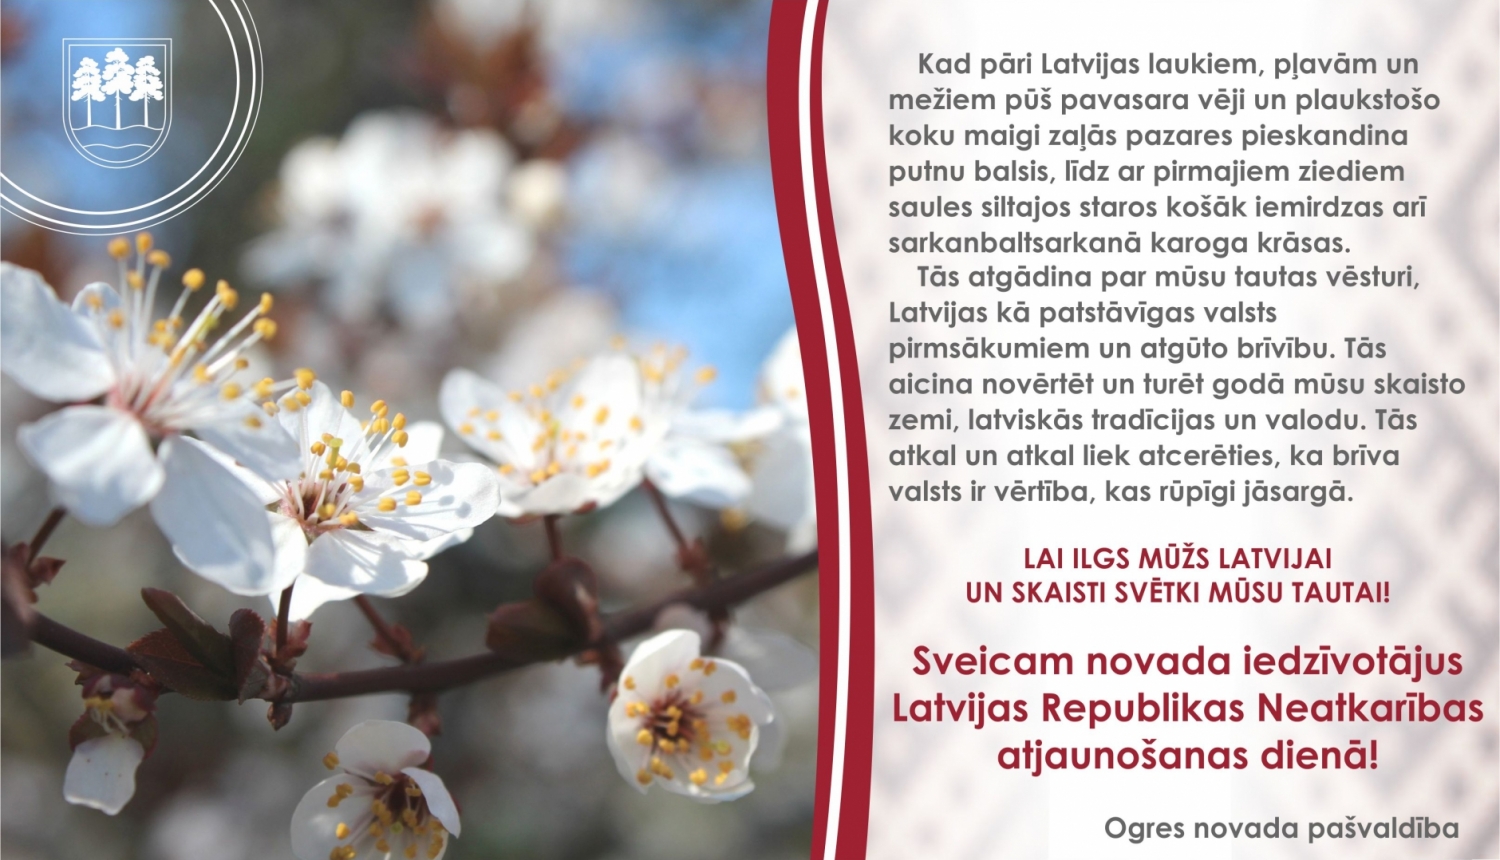 Ogres novada pašvaldības apsveikums Latvijas Republikas Neatkarības atjaunošanas dienā